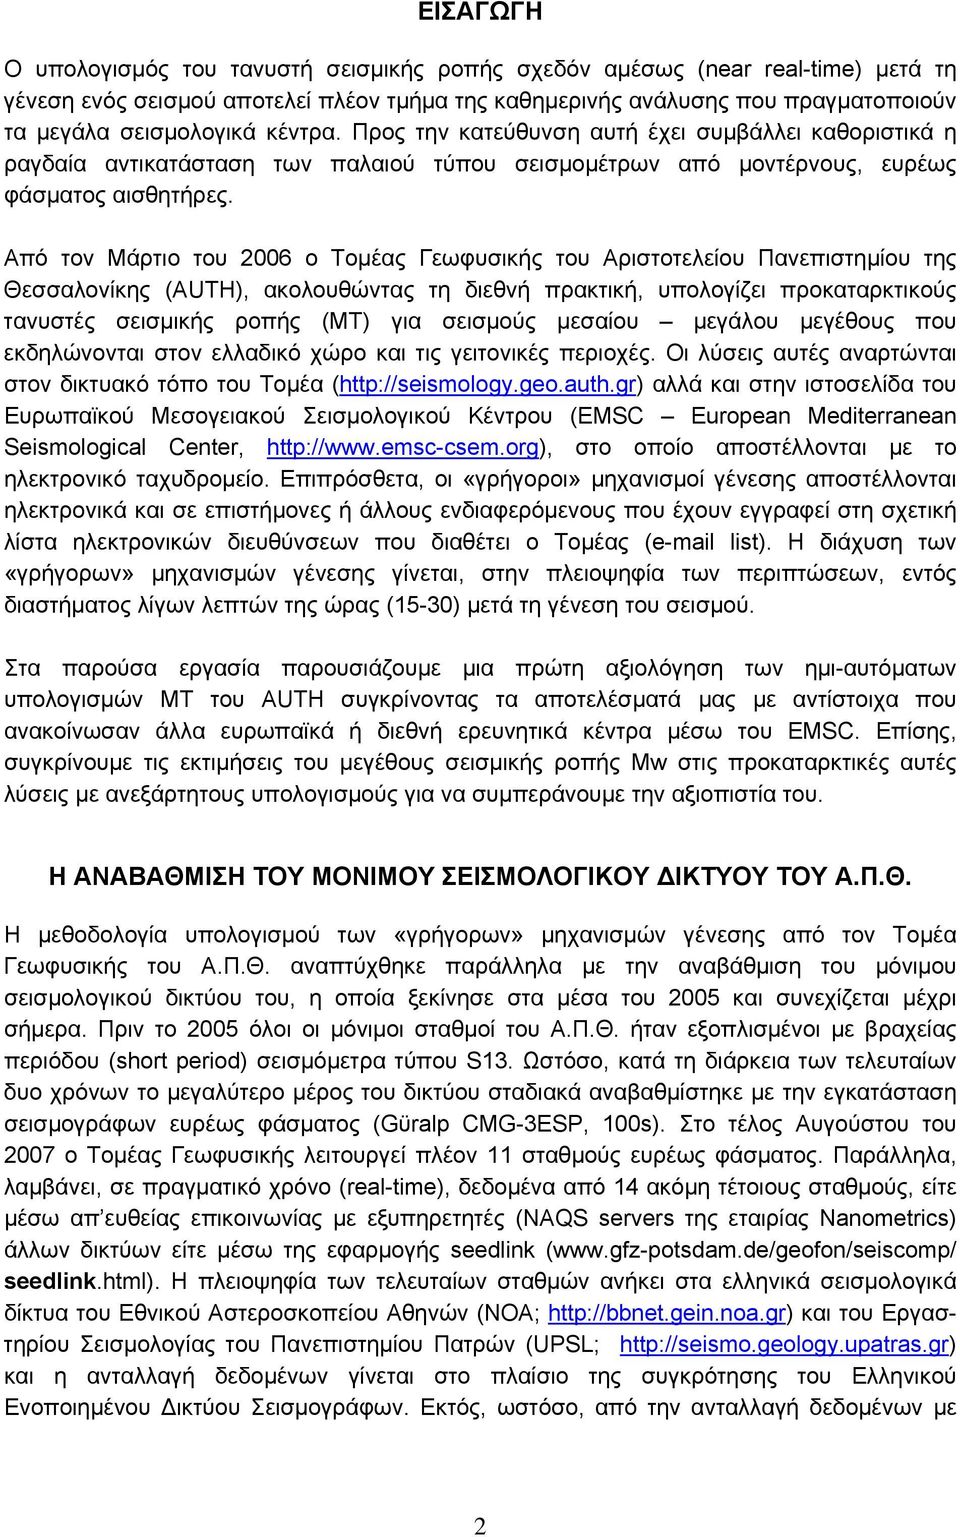 Από τον Μάρτιο του 2006 ο Τομέας Γεωφυσικής του Αριστοτελείου Πανεπιστημίου της Θεσσαλονίκης (AUTH), ακολουθώντας τη διεθνή πρακτική, υπολογίζει προκαταρκτικούς τανυστές σεισμικής ροπής (ΜΤ) για